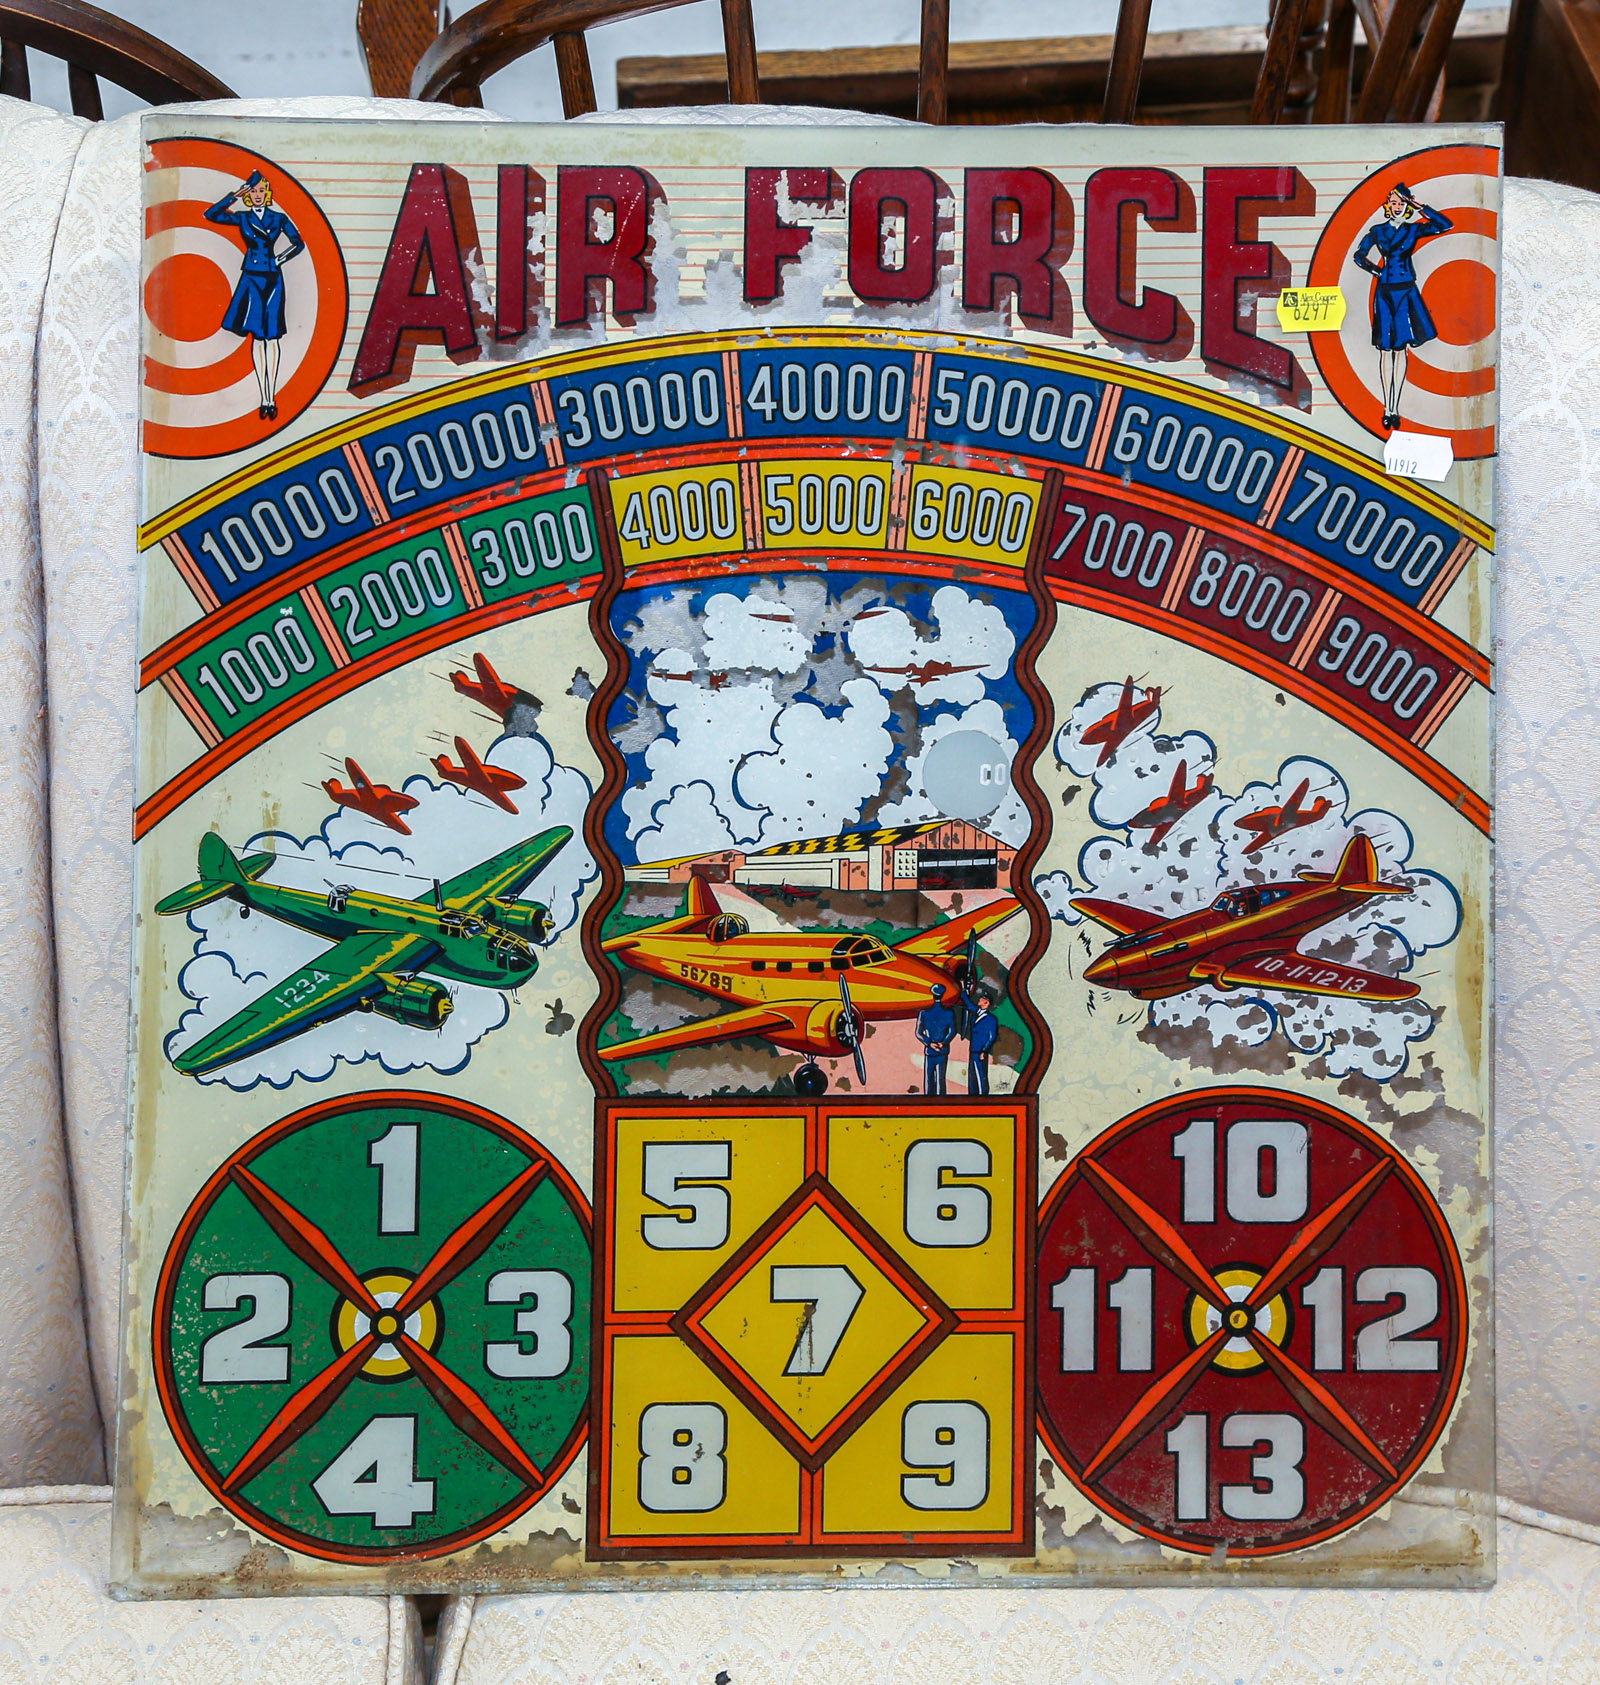 AIR FORCE PINBALL MACHINE GLASS 2e92e9